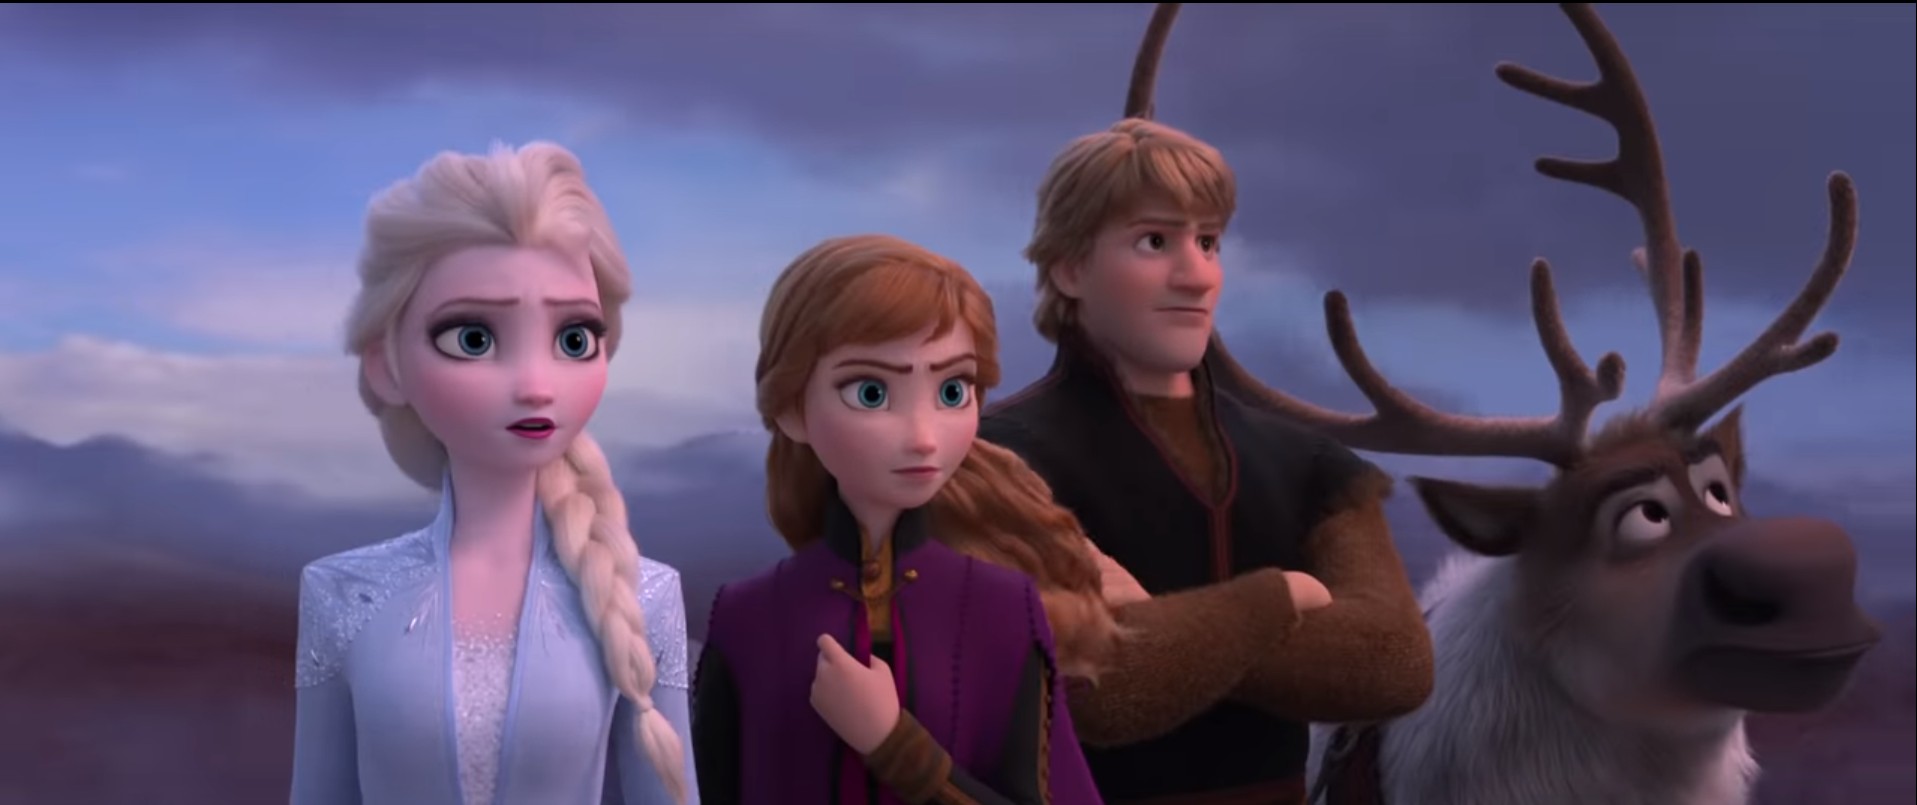 Cena de Frozen 2 (Foto: Divulgação)